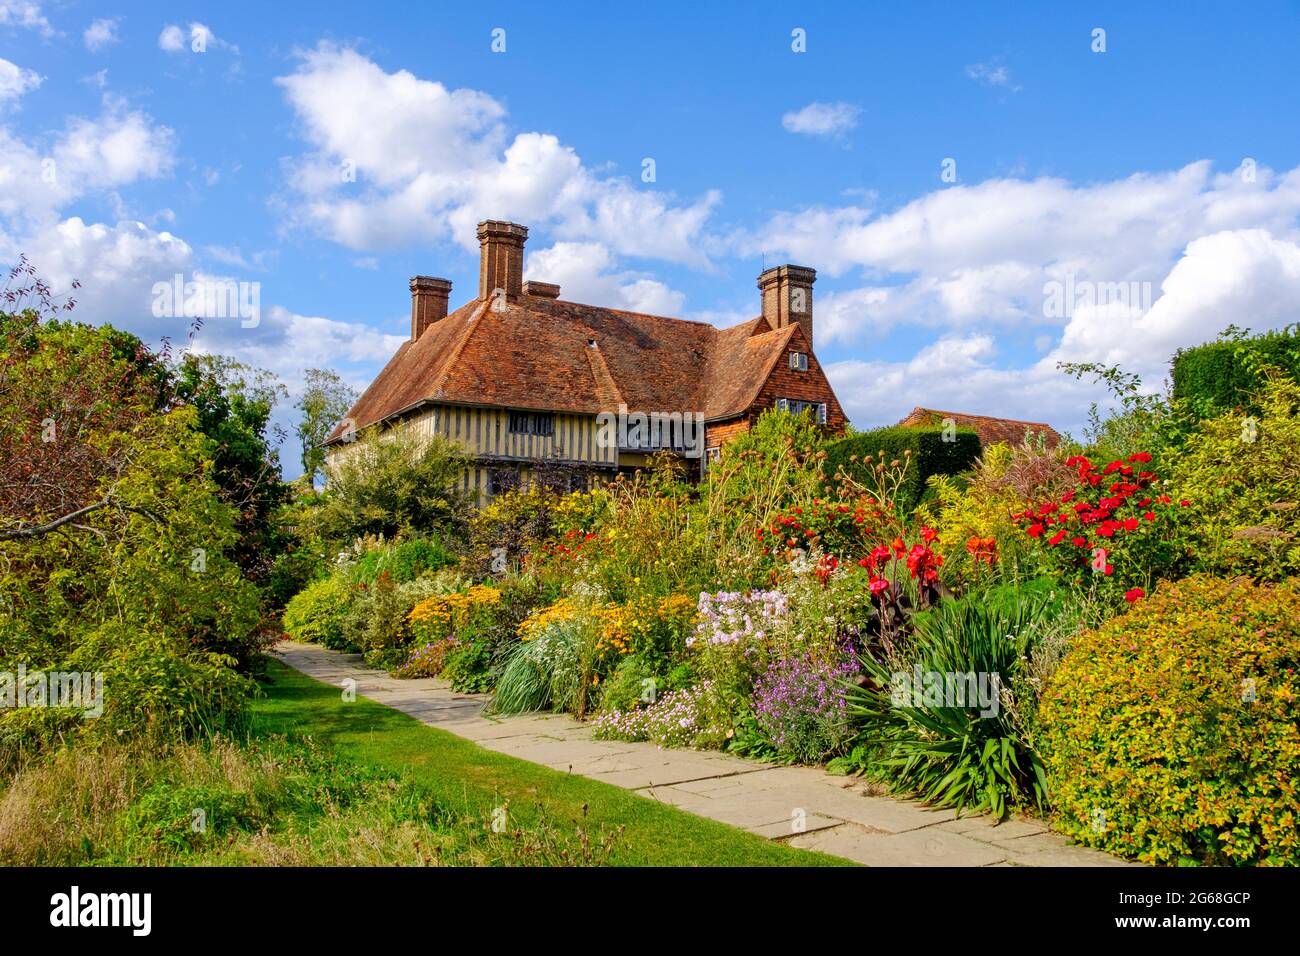 La longue frontière à Great Dixter, à la maison de feu Christopher Lloyd, le célèbre jardinier et écrivain. Northiam, East Sussex, Royaume-Uni Banque D'Images